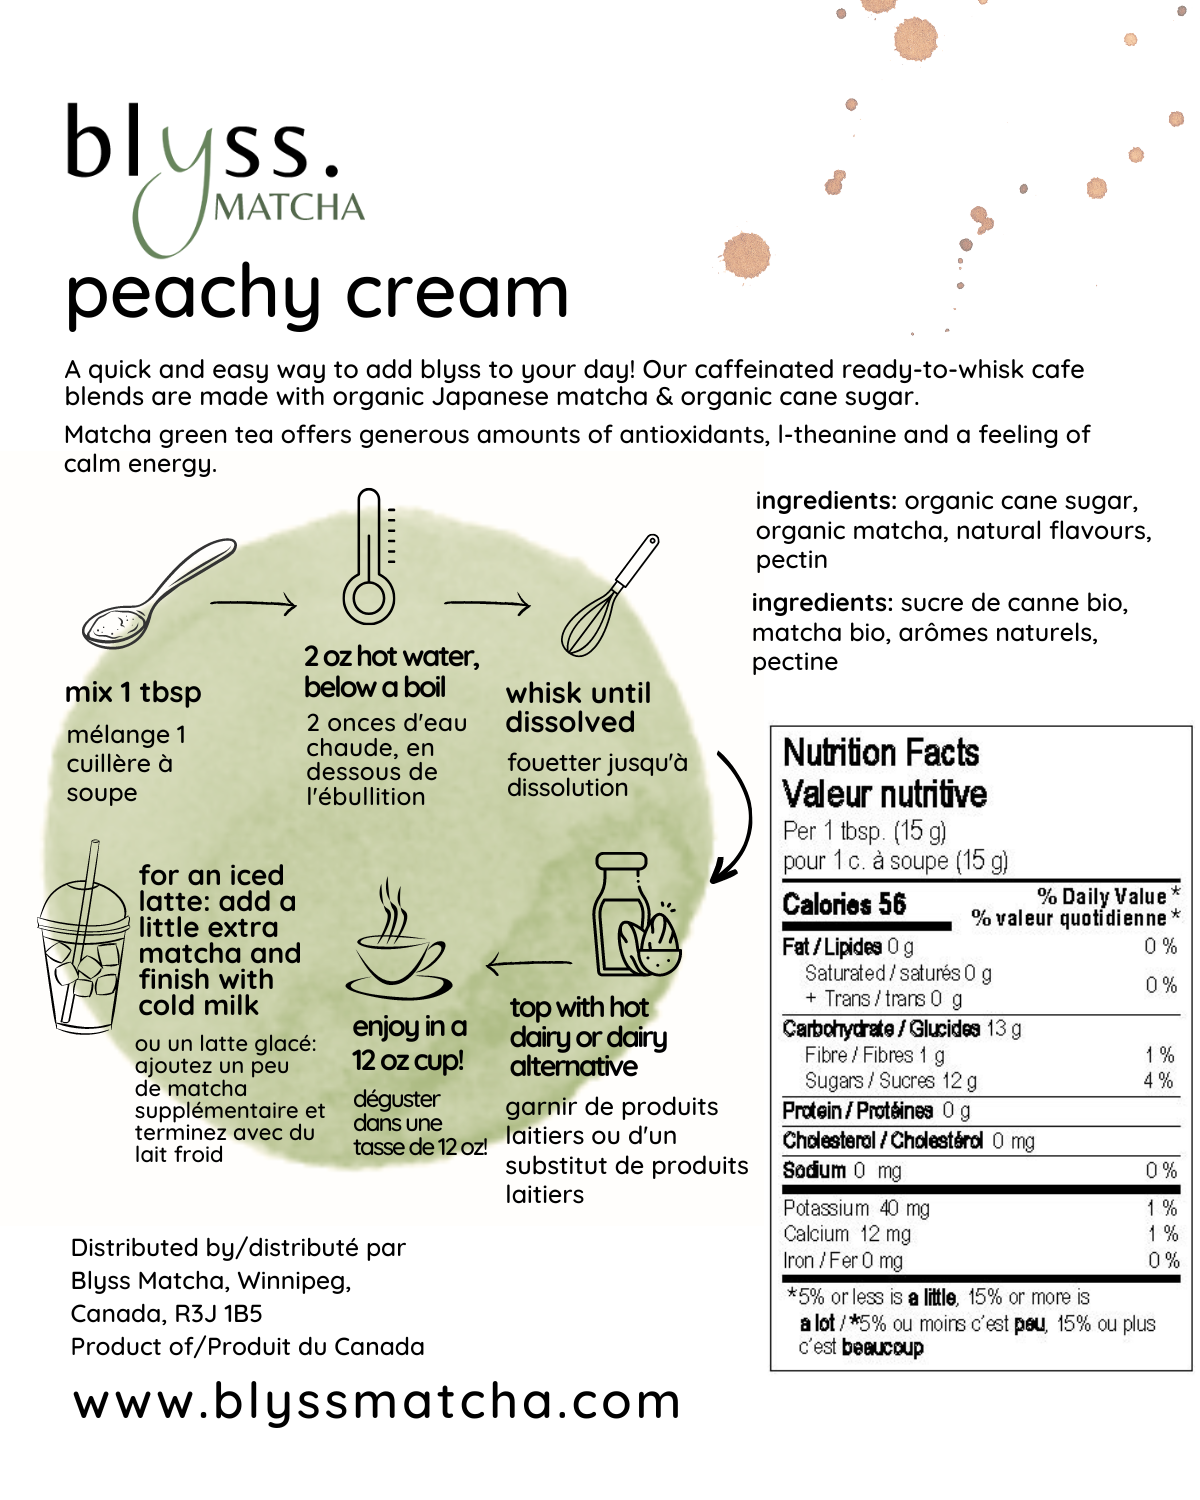 Peachy Cream